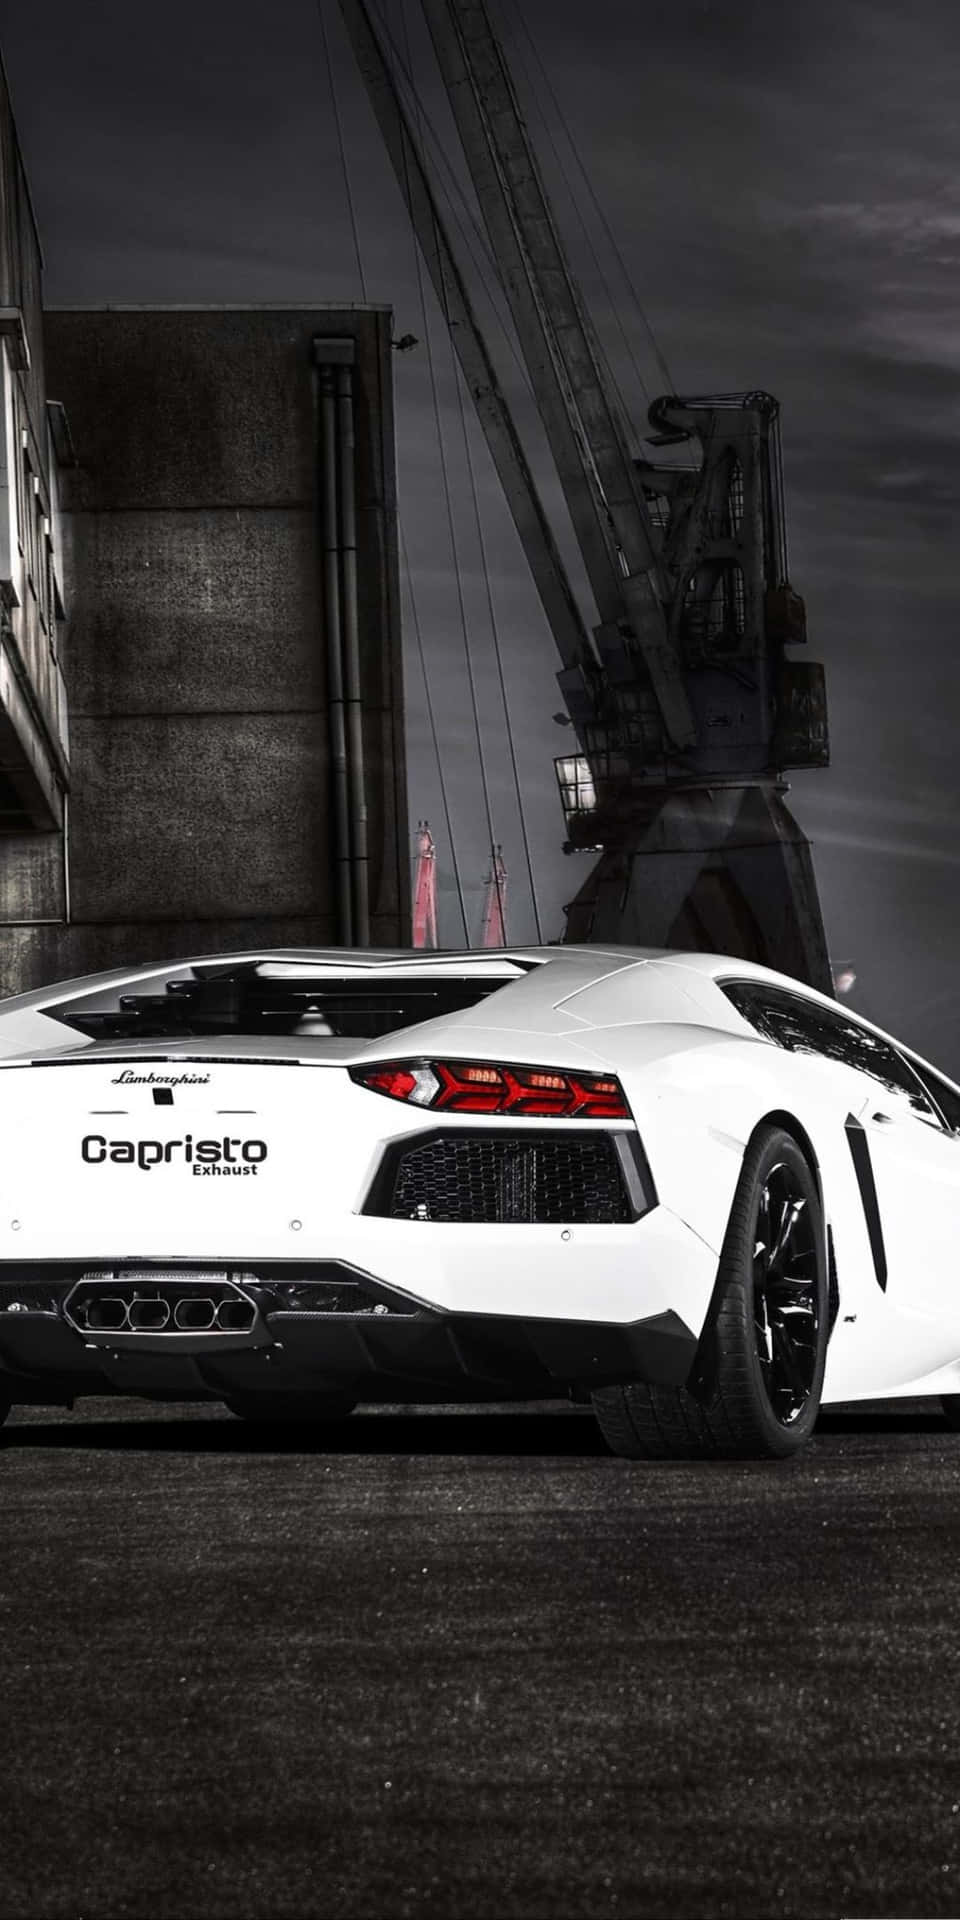 Lamborghinihuracan Evo, Nu Tillgänglig Som Bakgrundsbild För Pixel 3